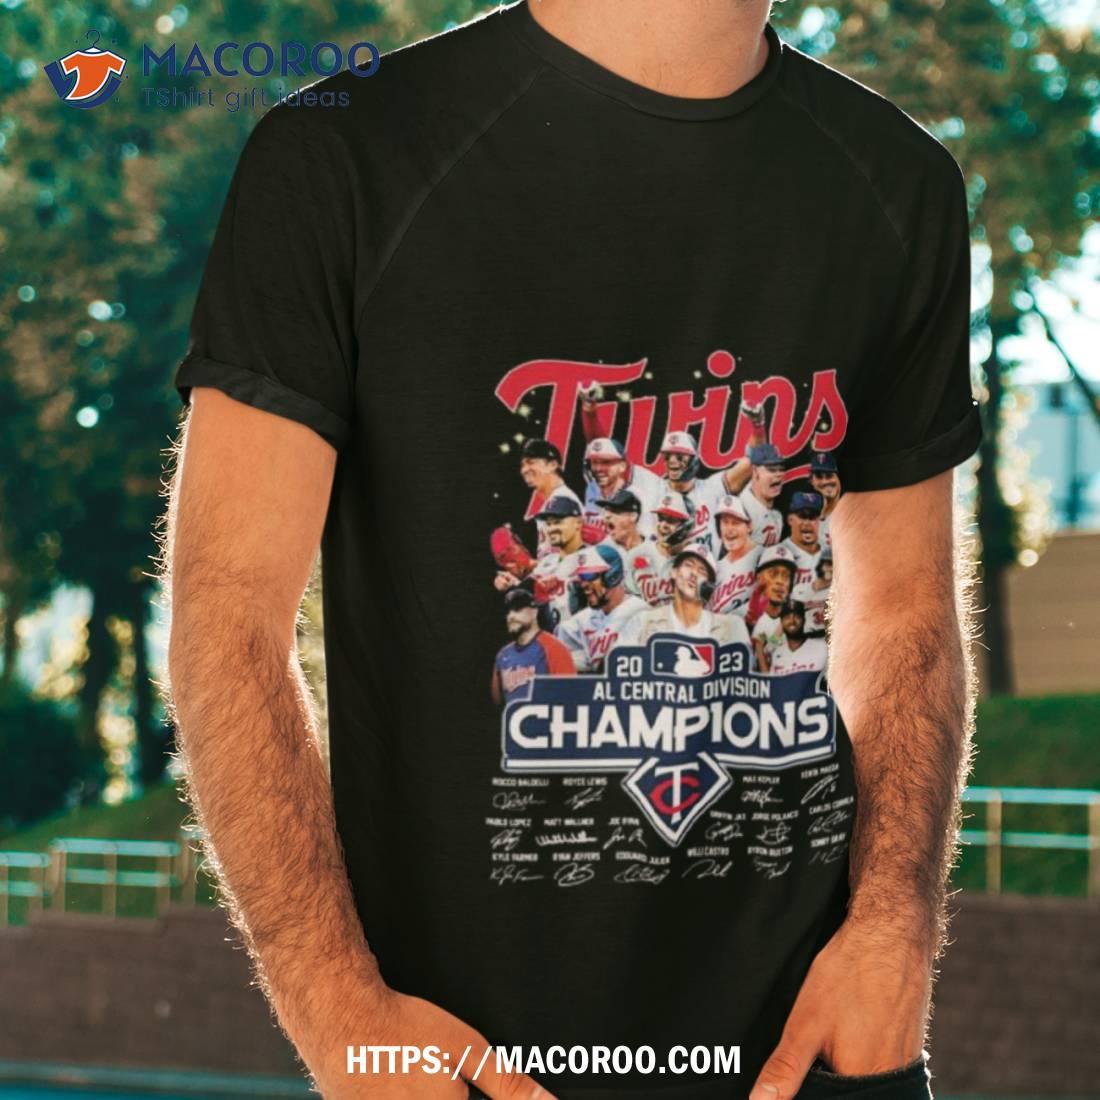 division champions shirt